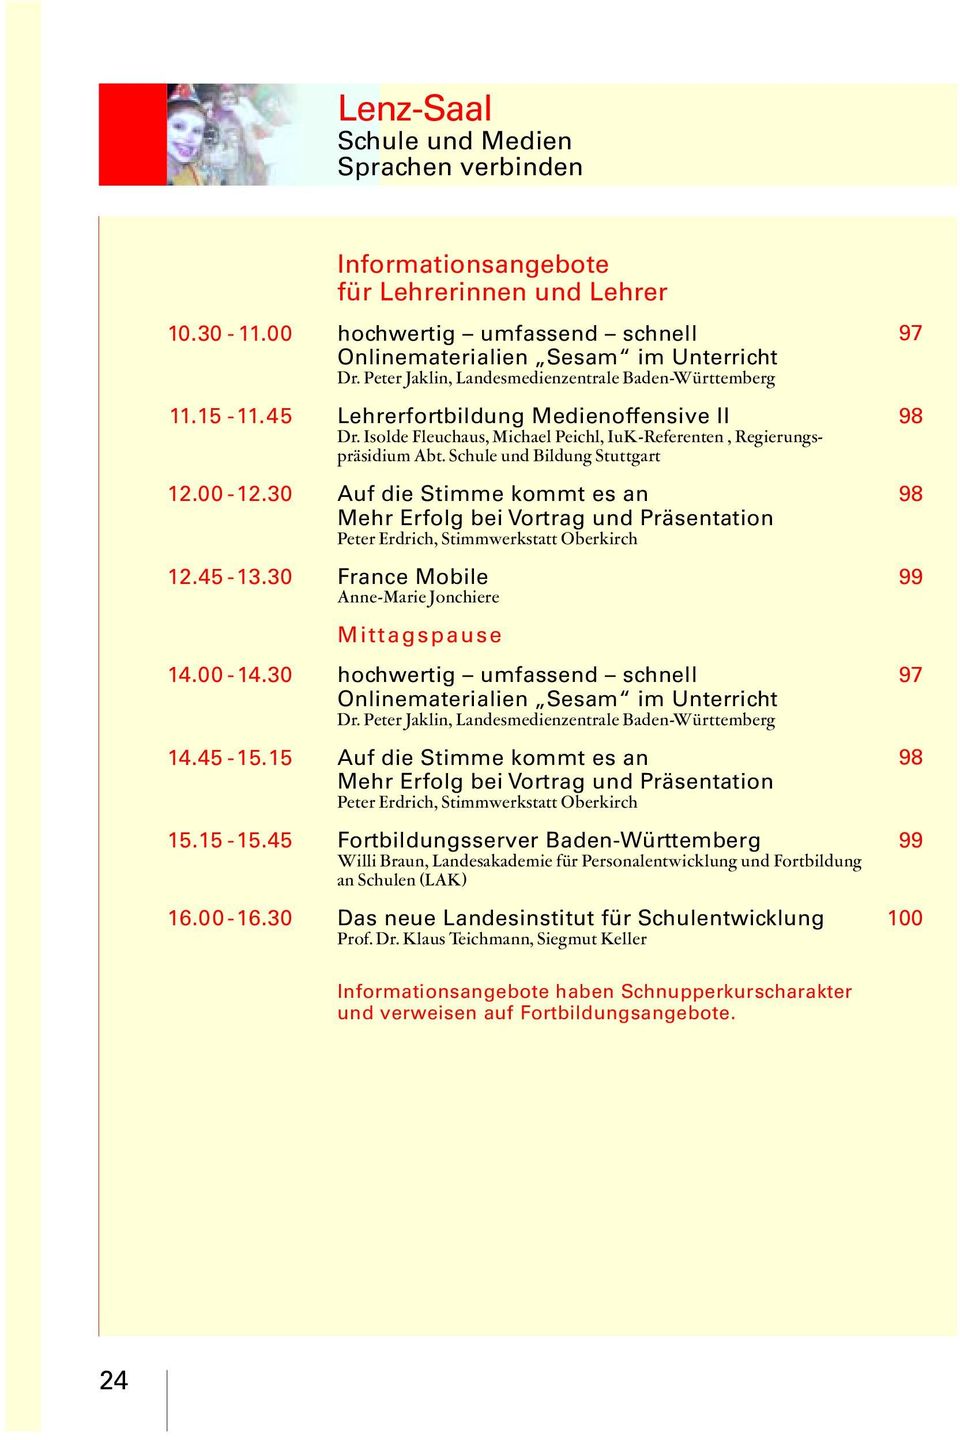 Schule und Bildung Stuttgart 12.00-12.30 Auf die Stimme kommt es an Mehr Erfolg bei Vortrag und Präsentation Peter Erdrich, Stimmwerkstatt Oberkirch 12.45-13.